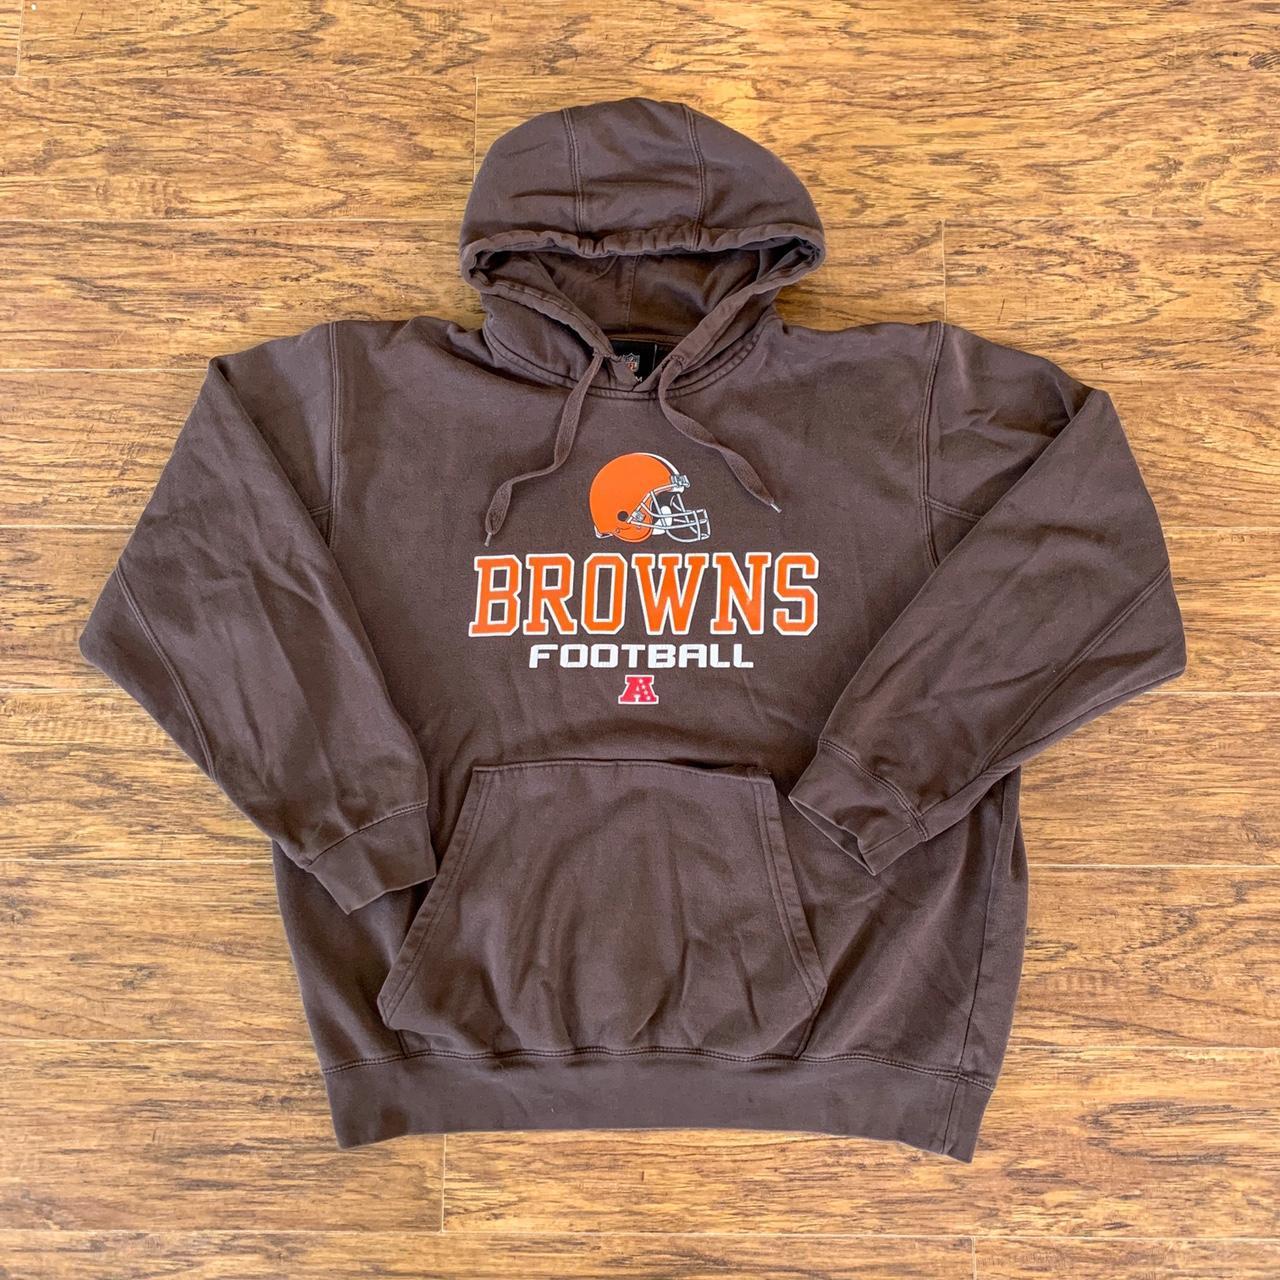 Cleveland Browns NFL Football Hoodie Sweatshirt - Depop